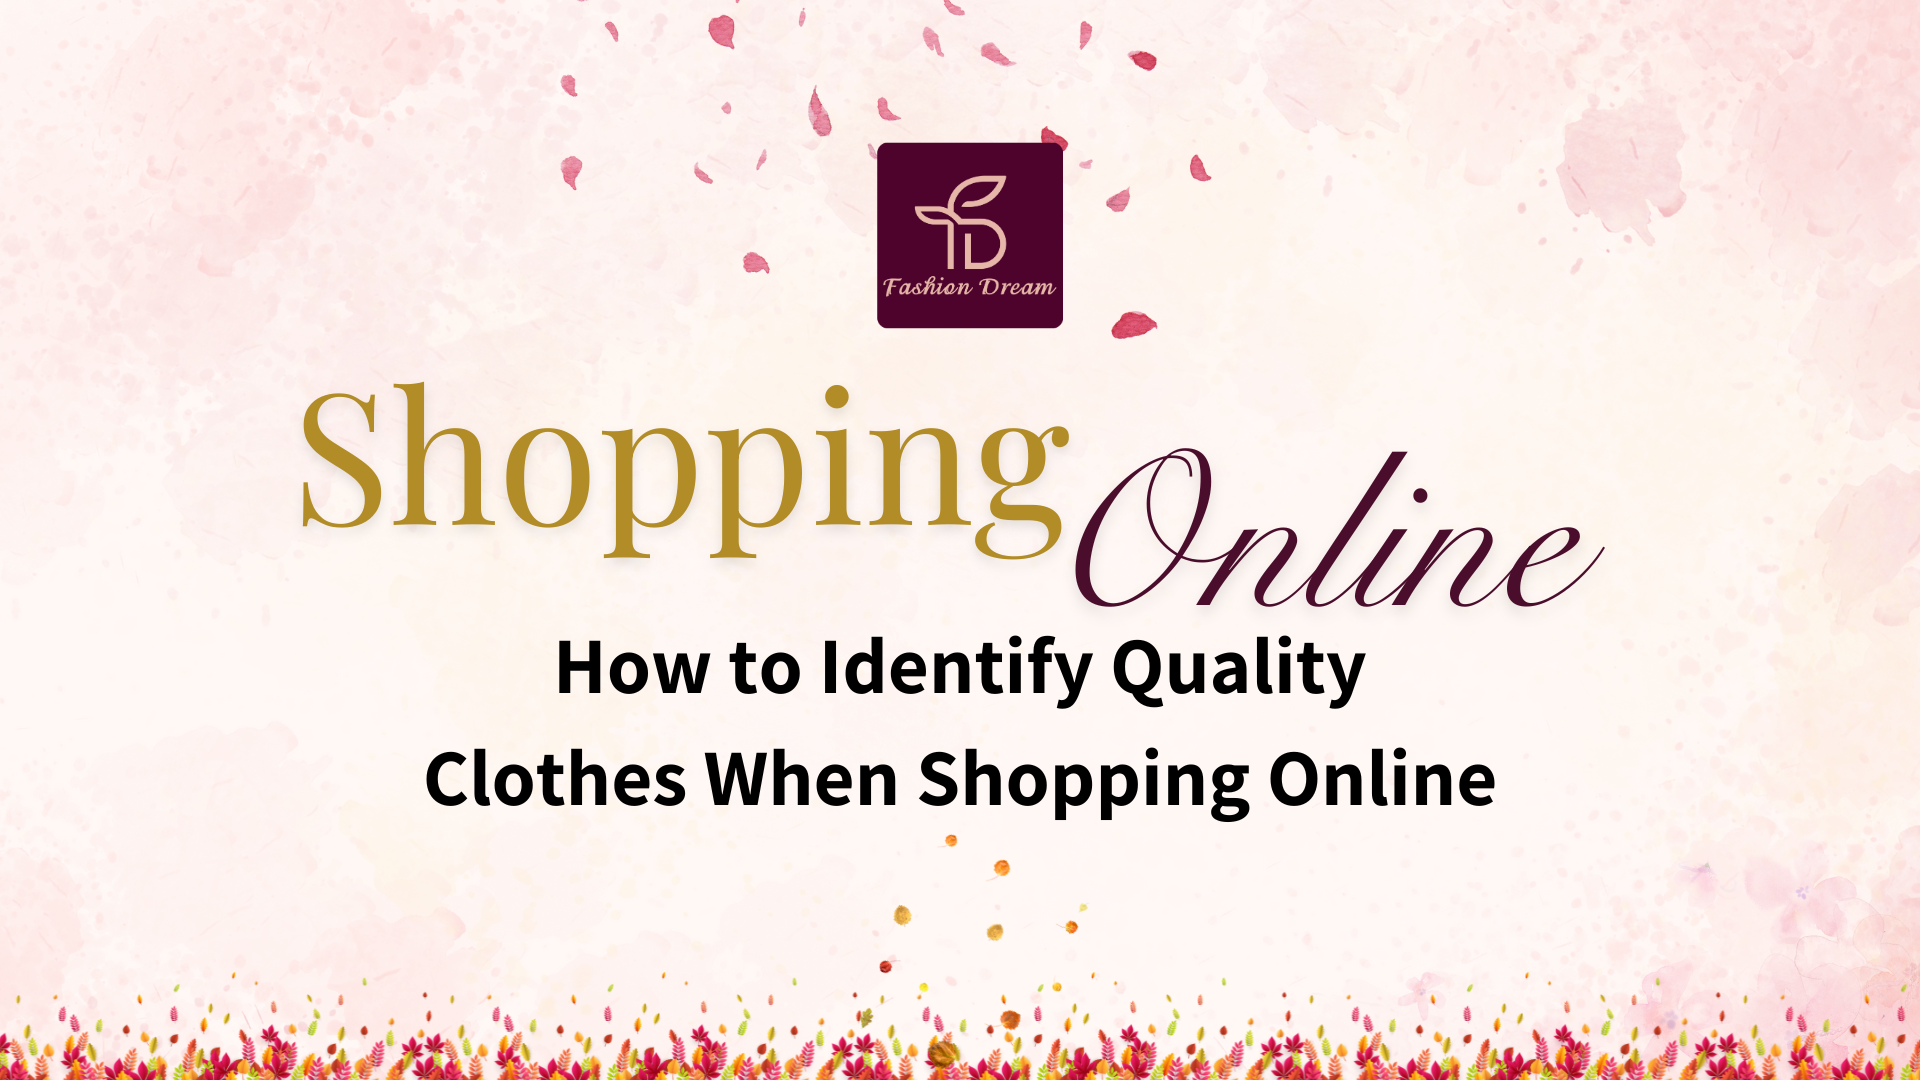 Blog shopping online